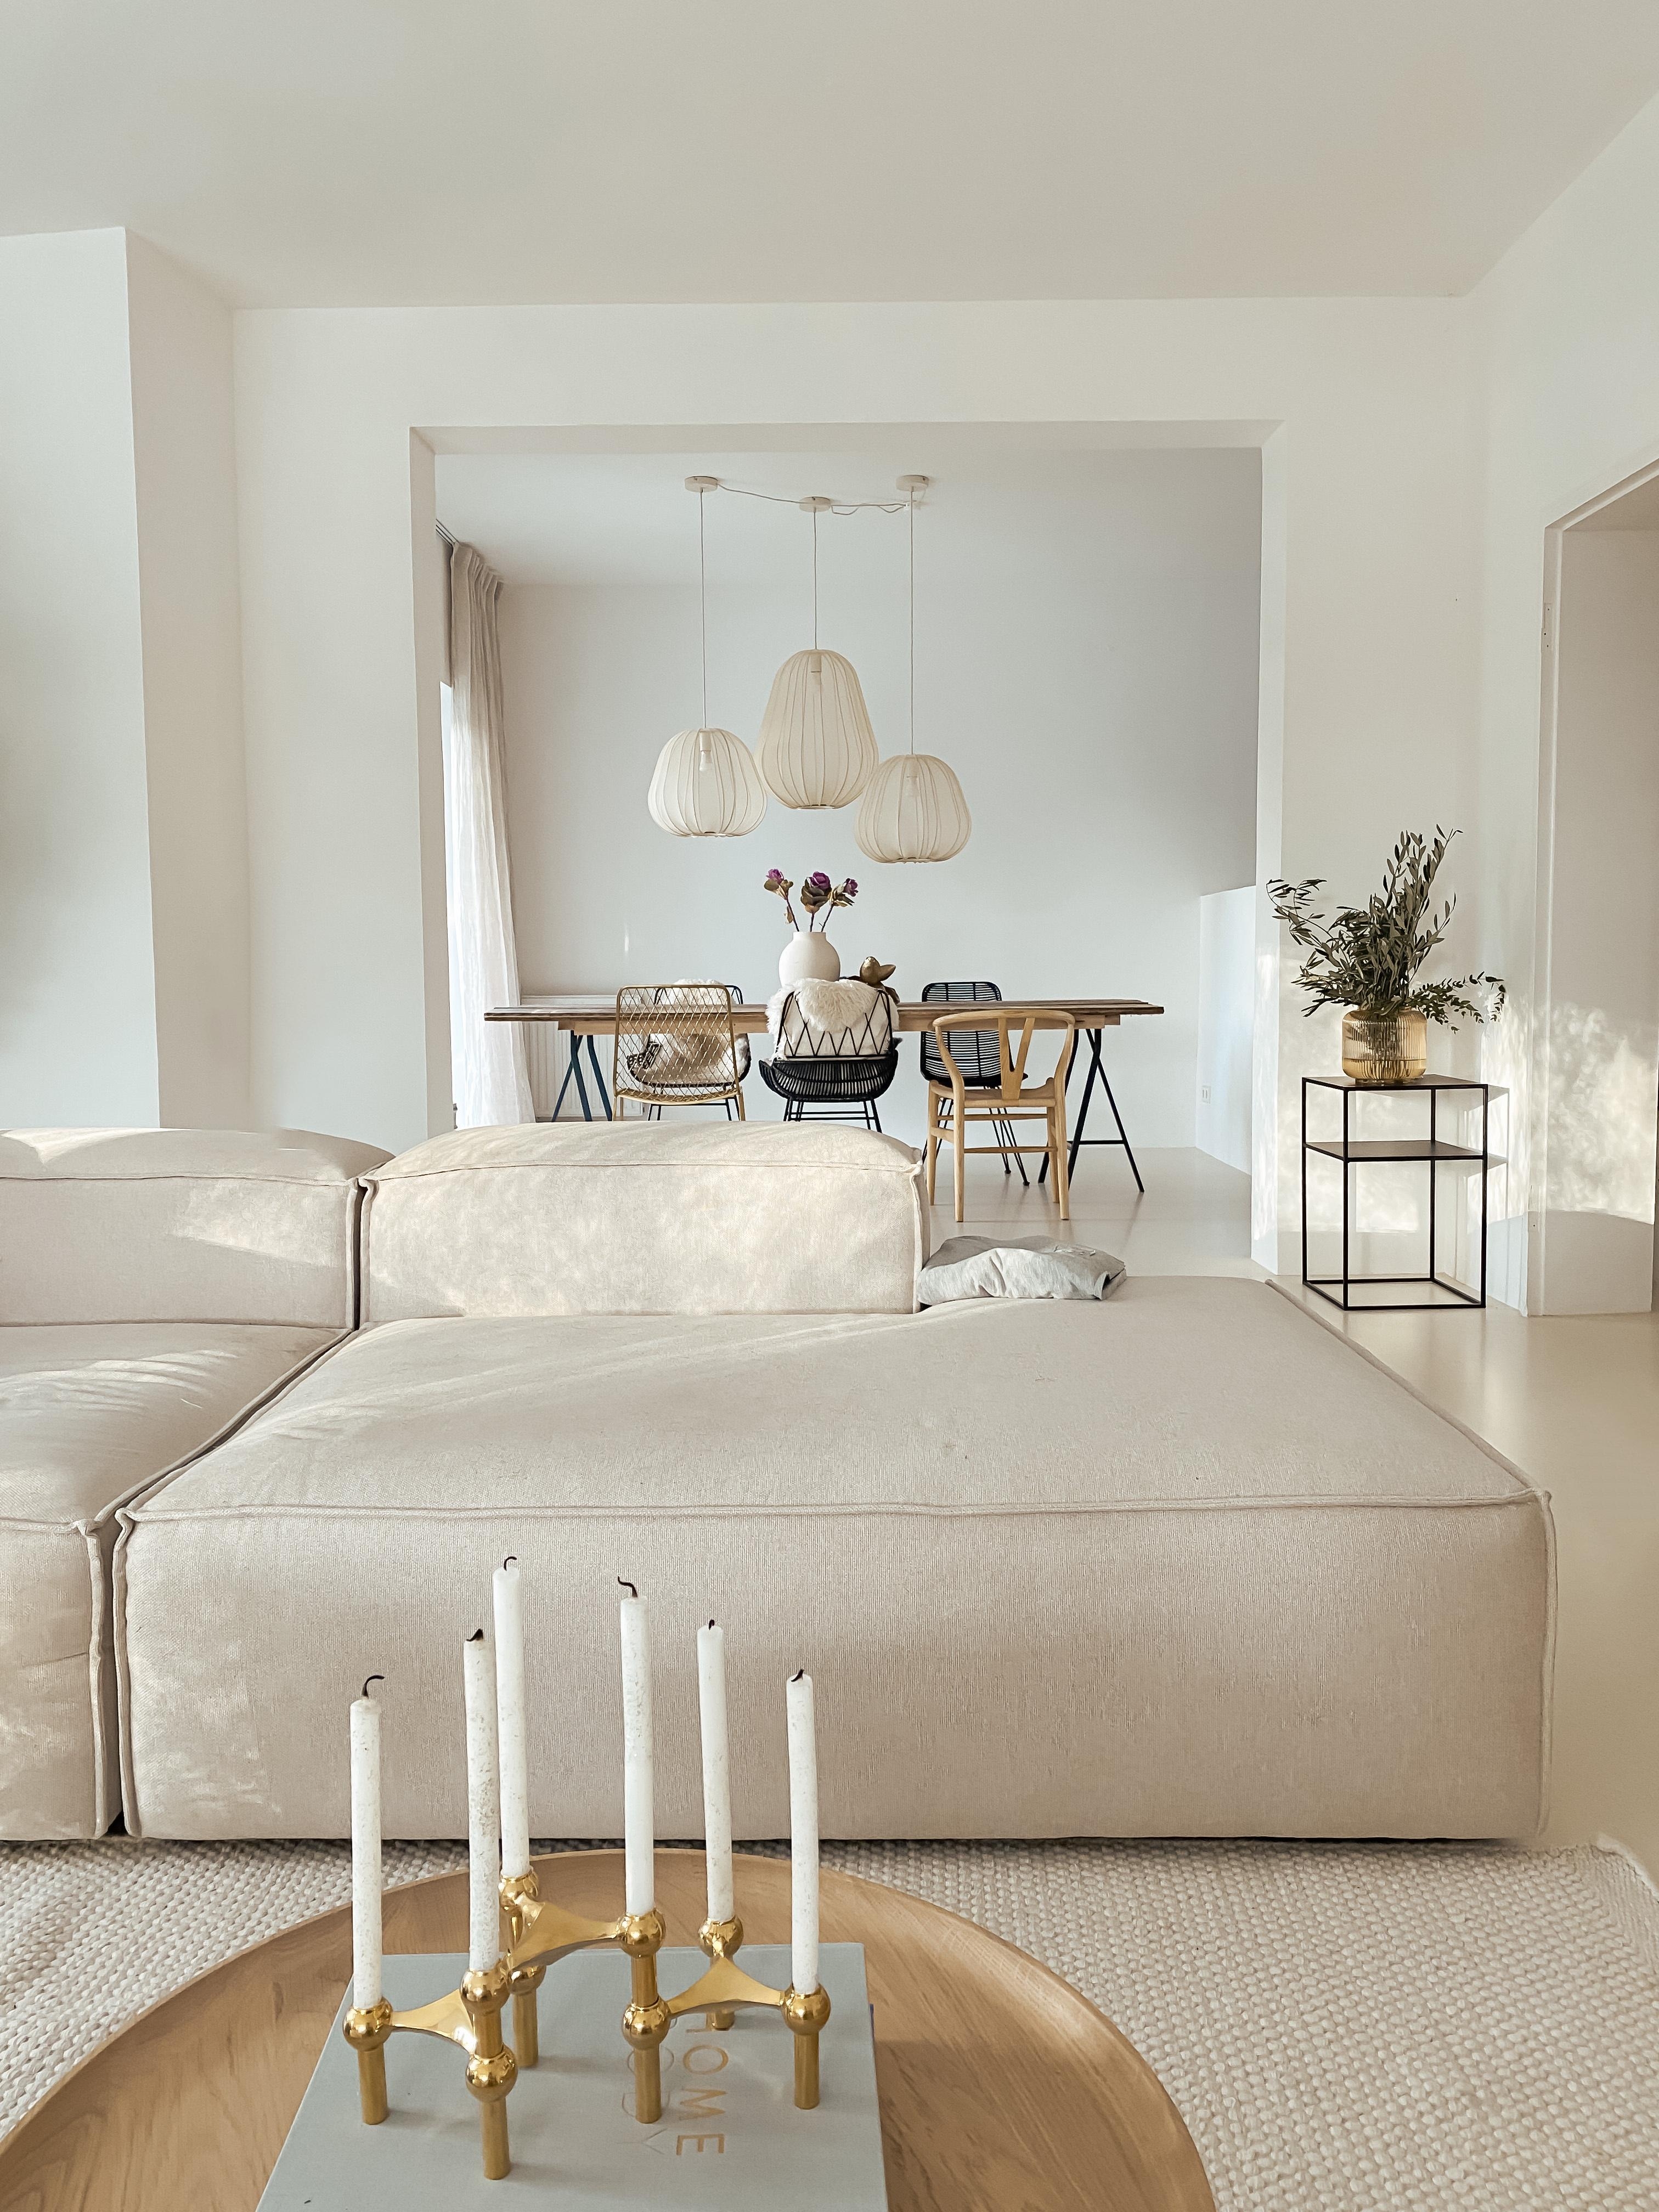 #allwhite #whiteliving #bungalow #couch #sofa #westwing #bolia #wohnzimmer #esstisch #stoffnagel #couchliebt #interior 